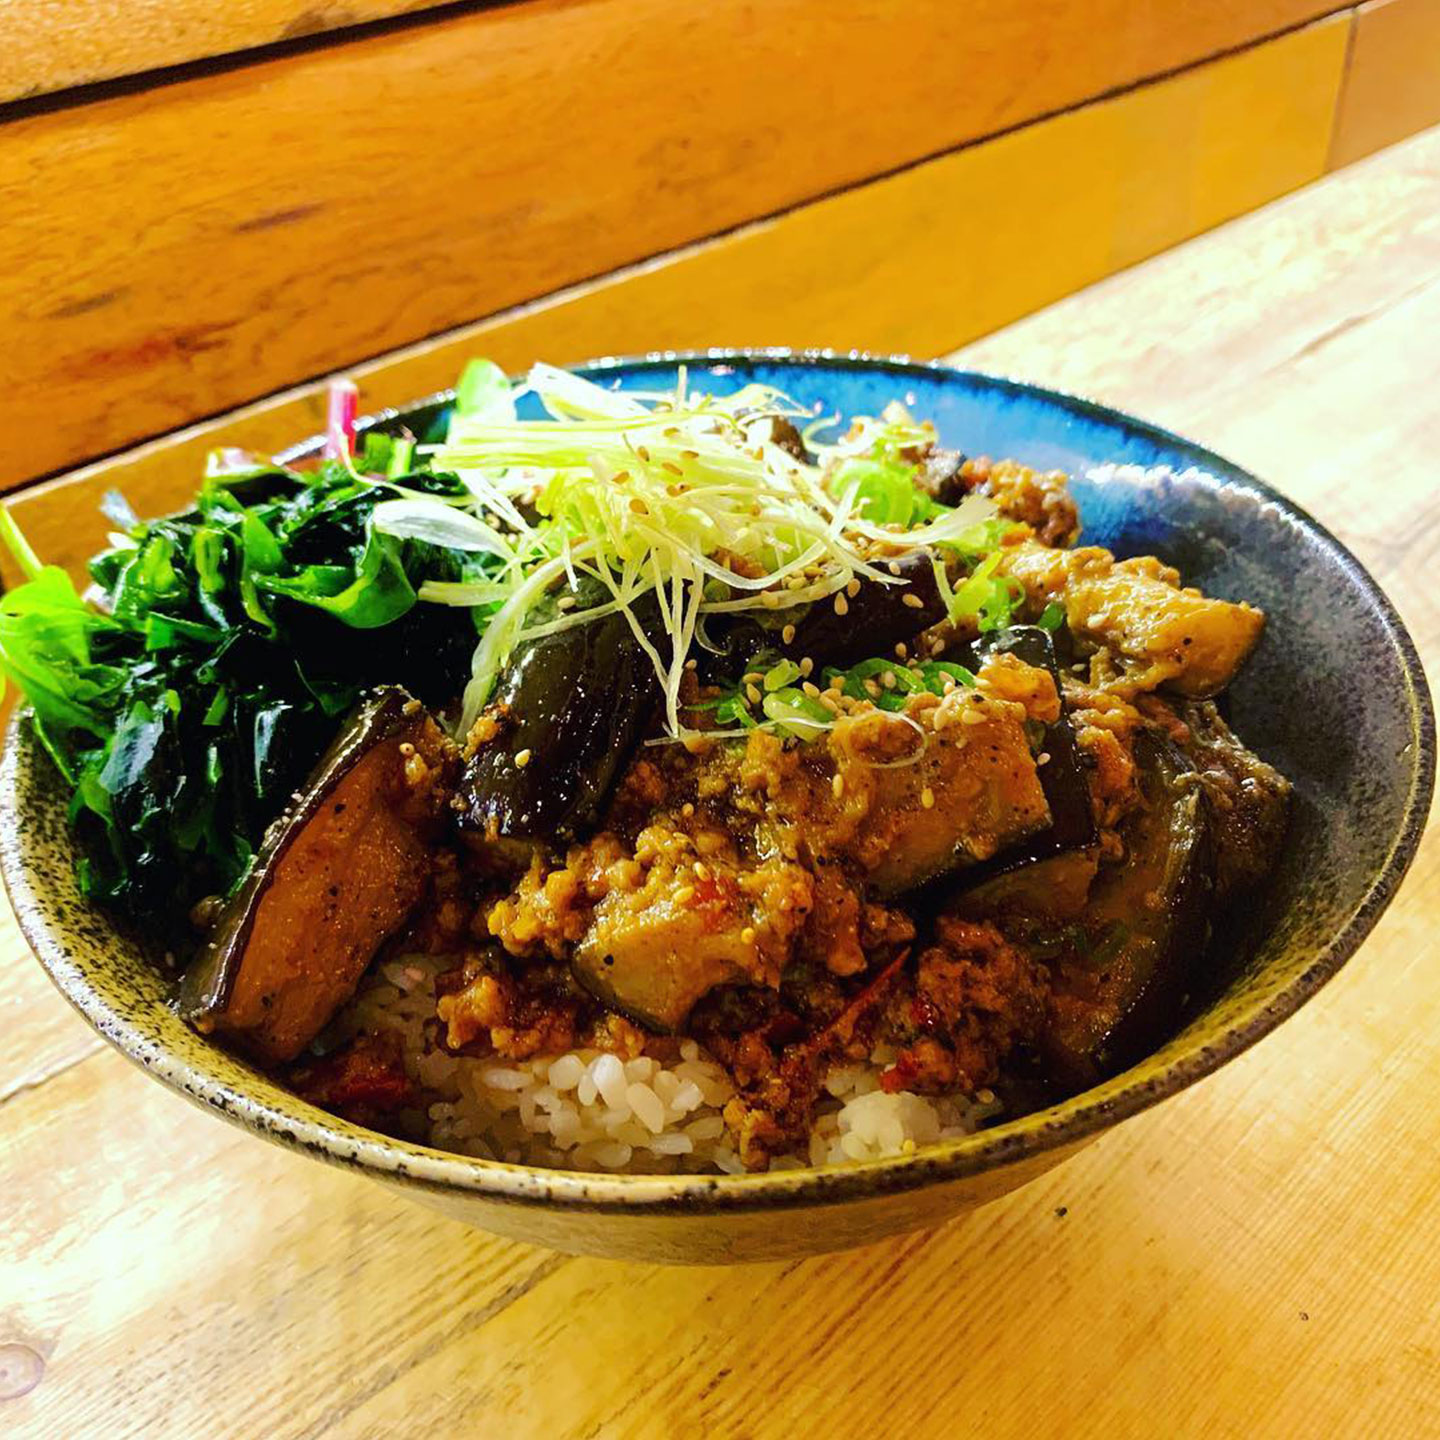 Nasu with rice